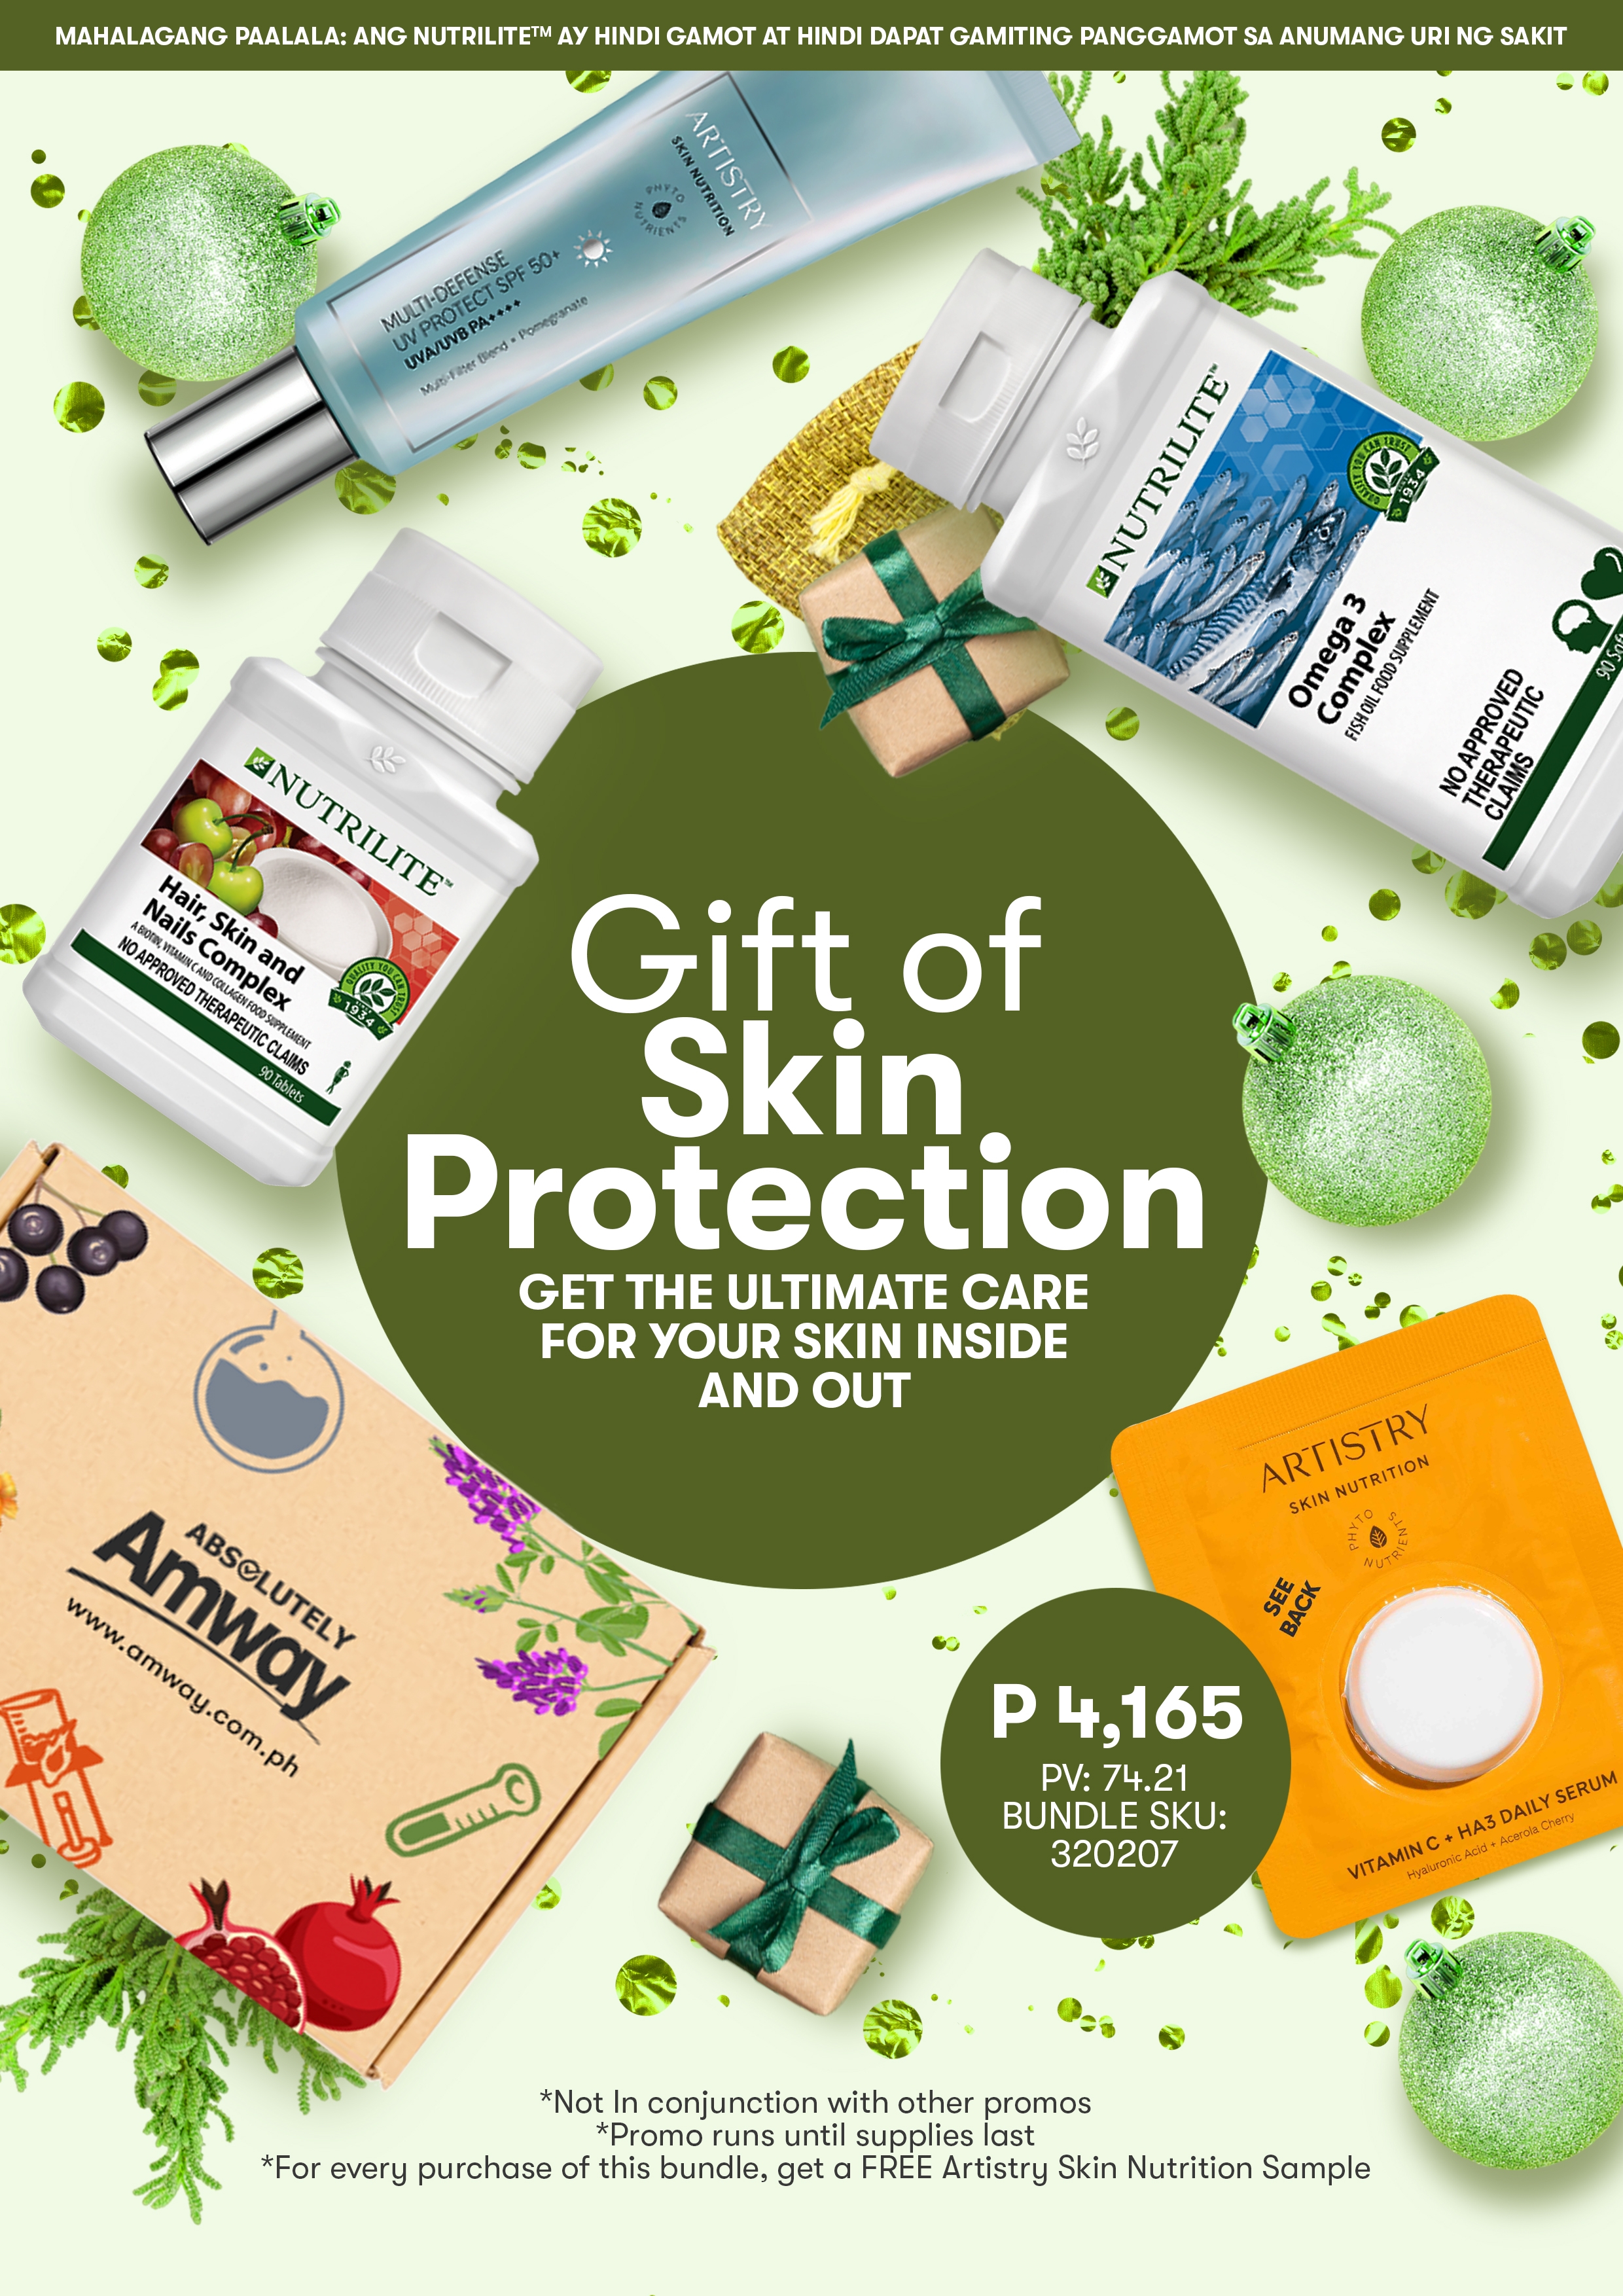 Gift_of_Skin_Protection.jpg